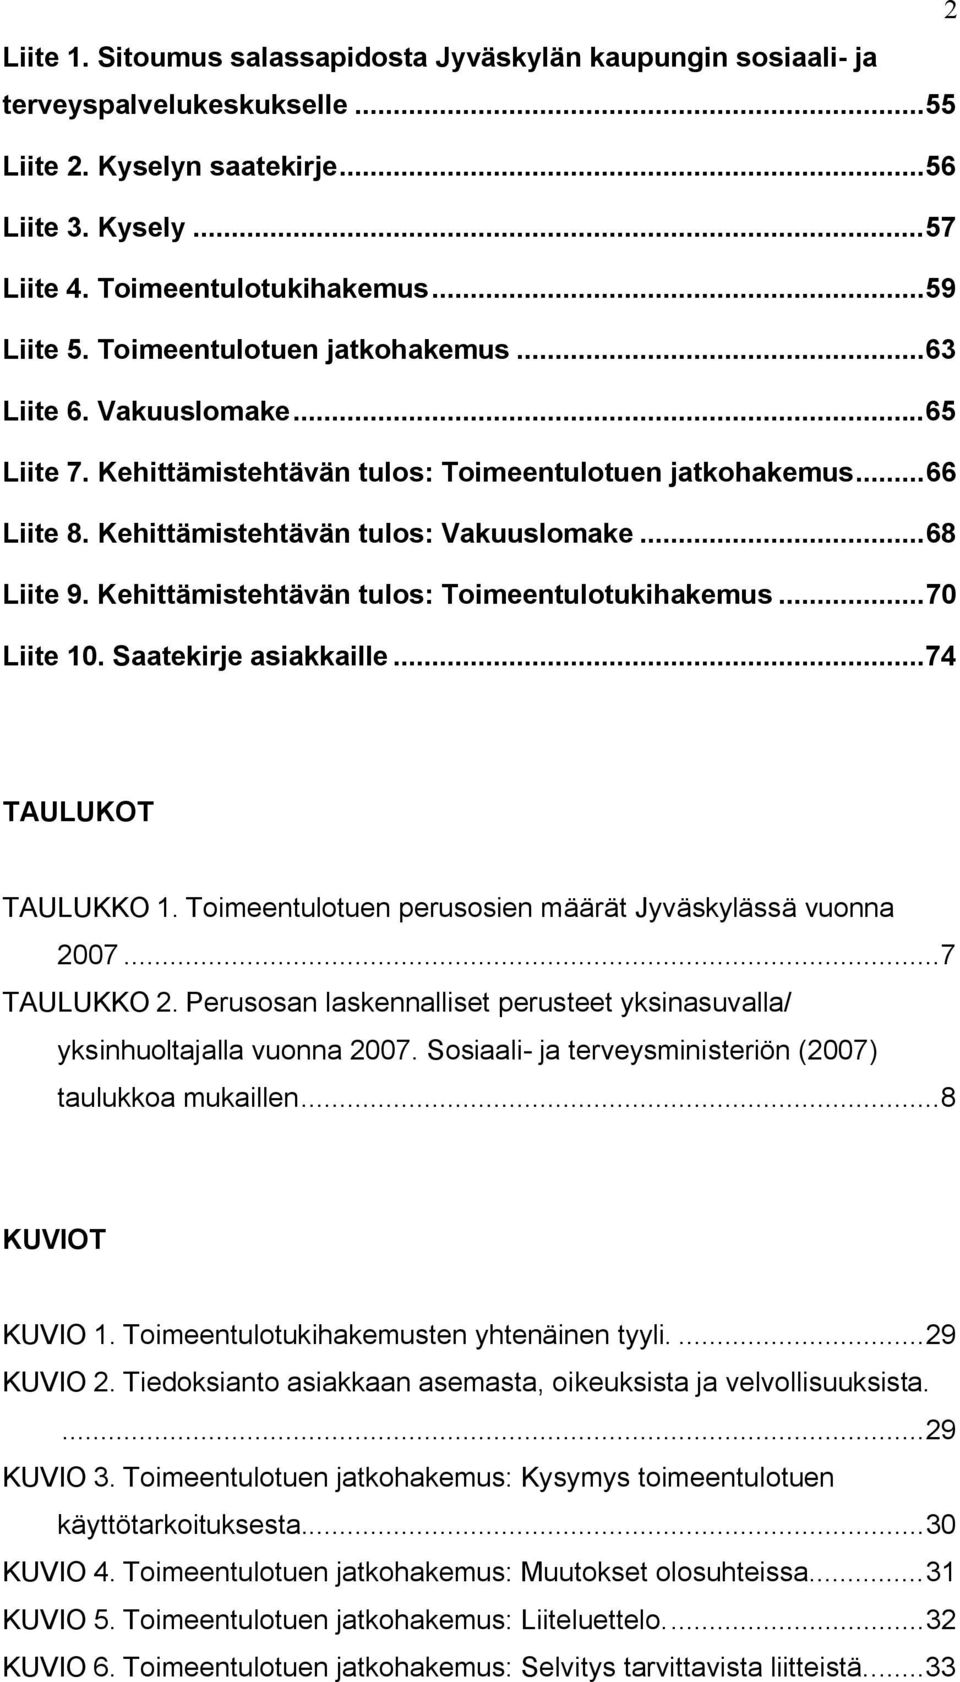 Kehittämistehtävän tulos: Toimeentulotukihakemus...70 Liite 10. Saatekirje asiakkaille...74 TAULUKOT TAULUKKO 1. Toimeentulotuen perusosien määrät Jyväskylässä vuonna 2007...7 TAULUKKO 2.